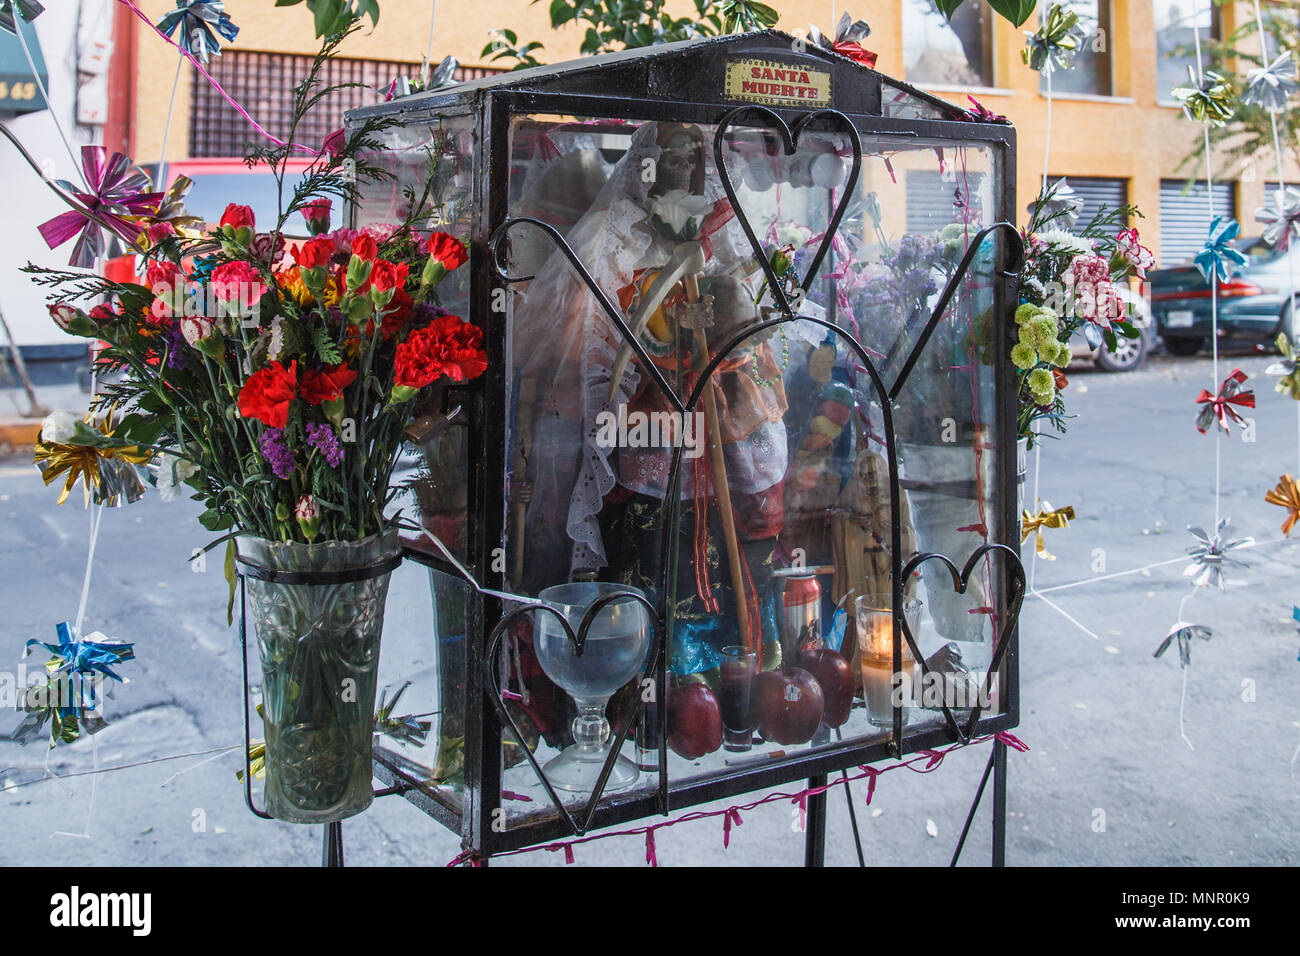 Un sanctuaire de Santa Muerte dans la rue, c'est réuni avec des fleurs fraîches, fruits,une bougie, de l'eau et des ornements colorés, Mexico, Mexique. Banque D'Images